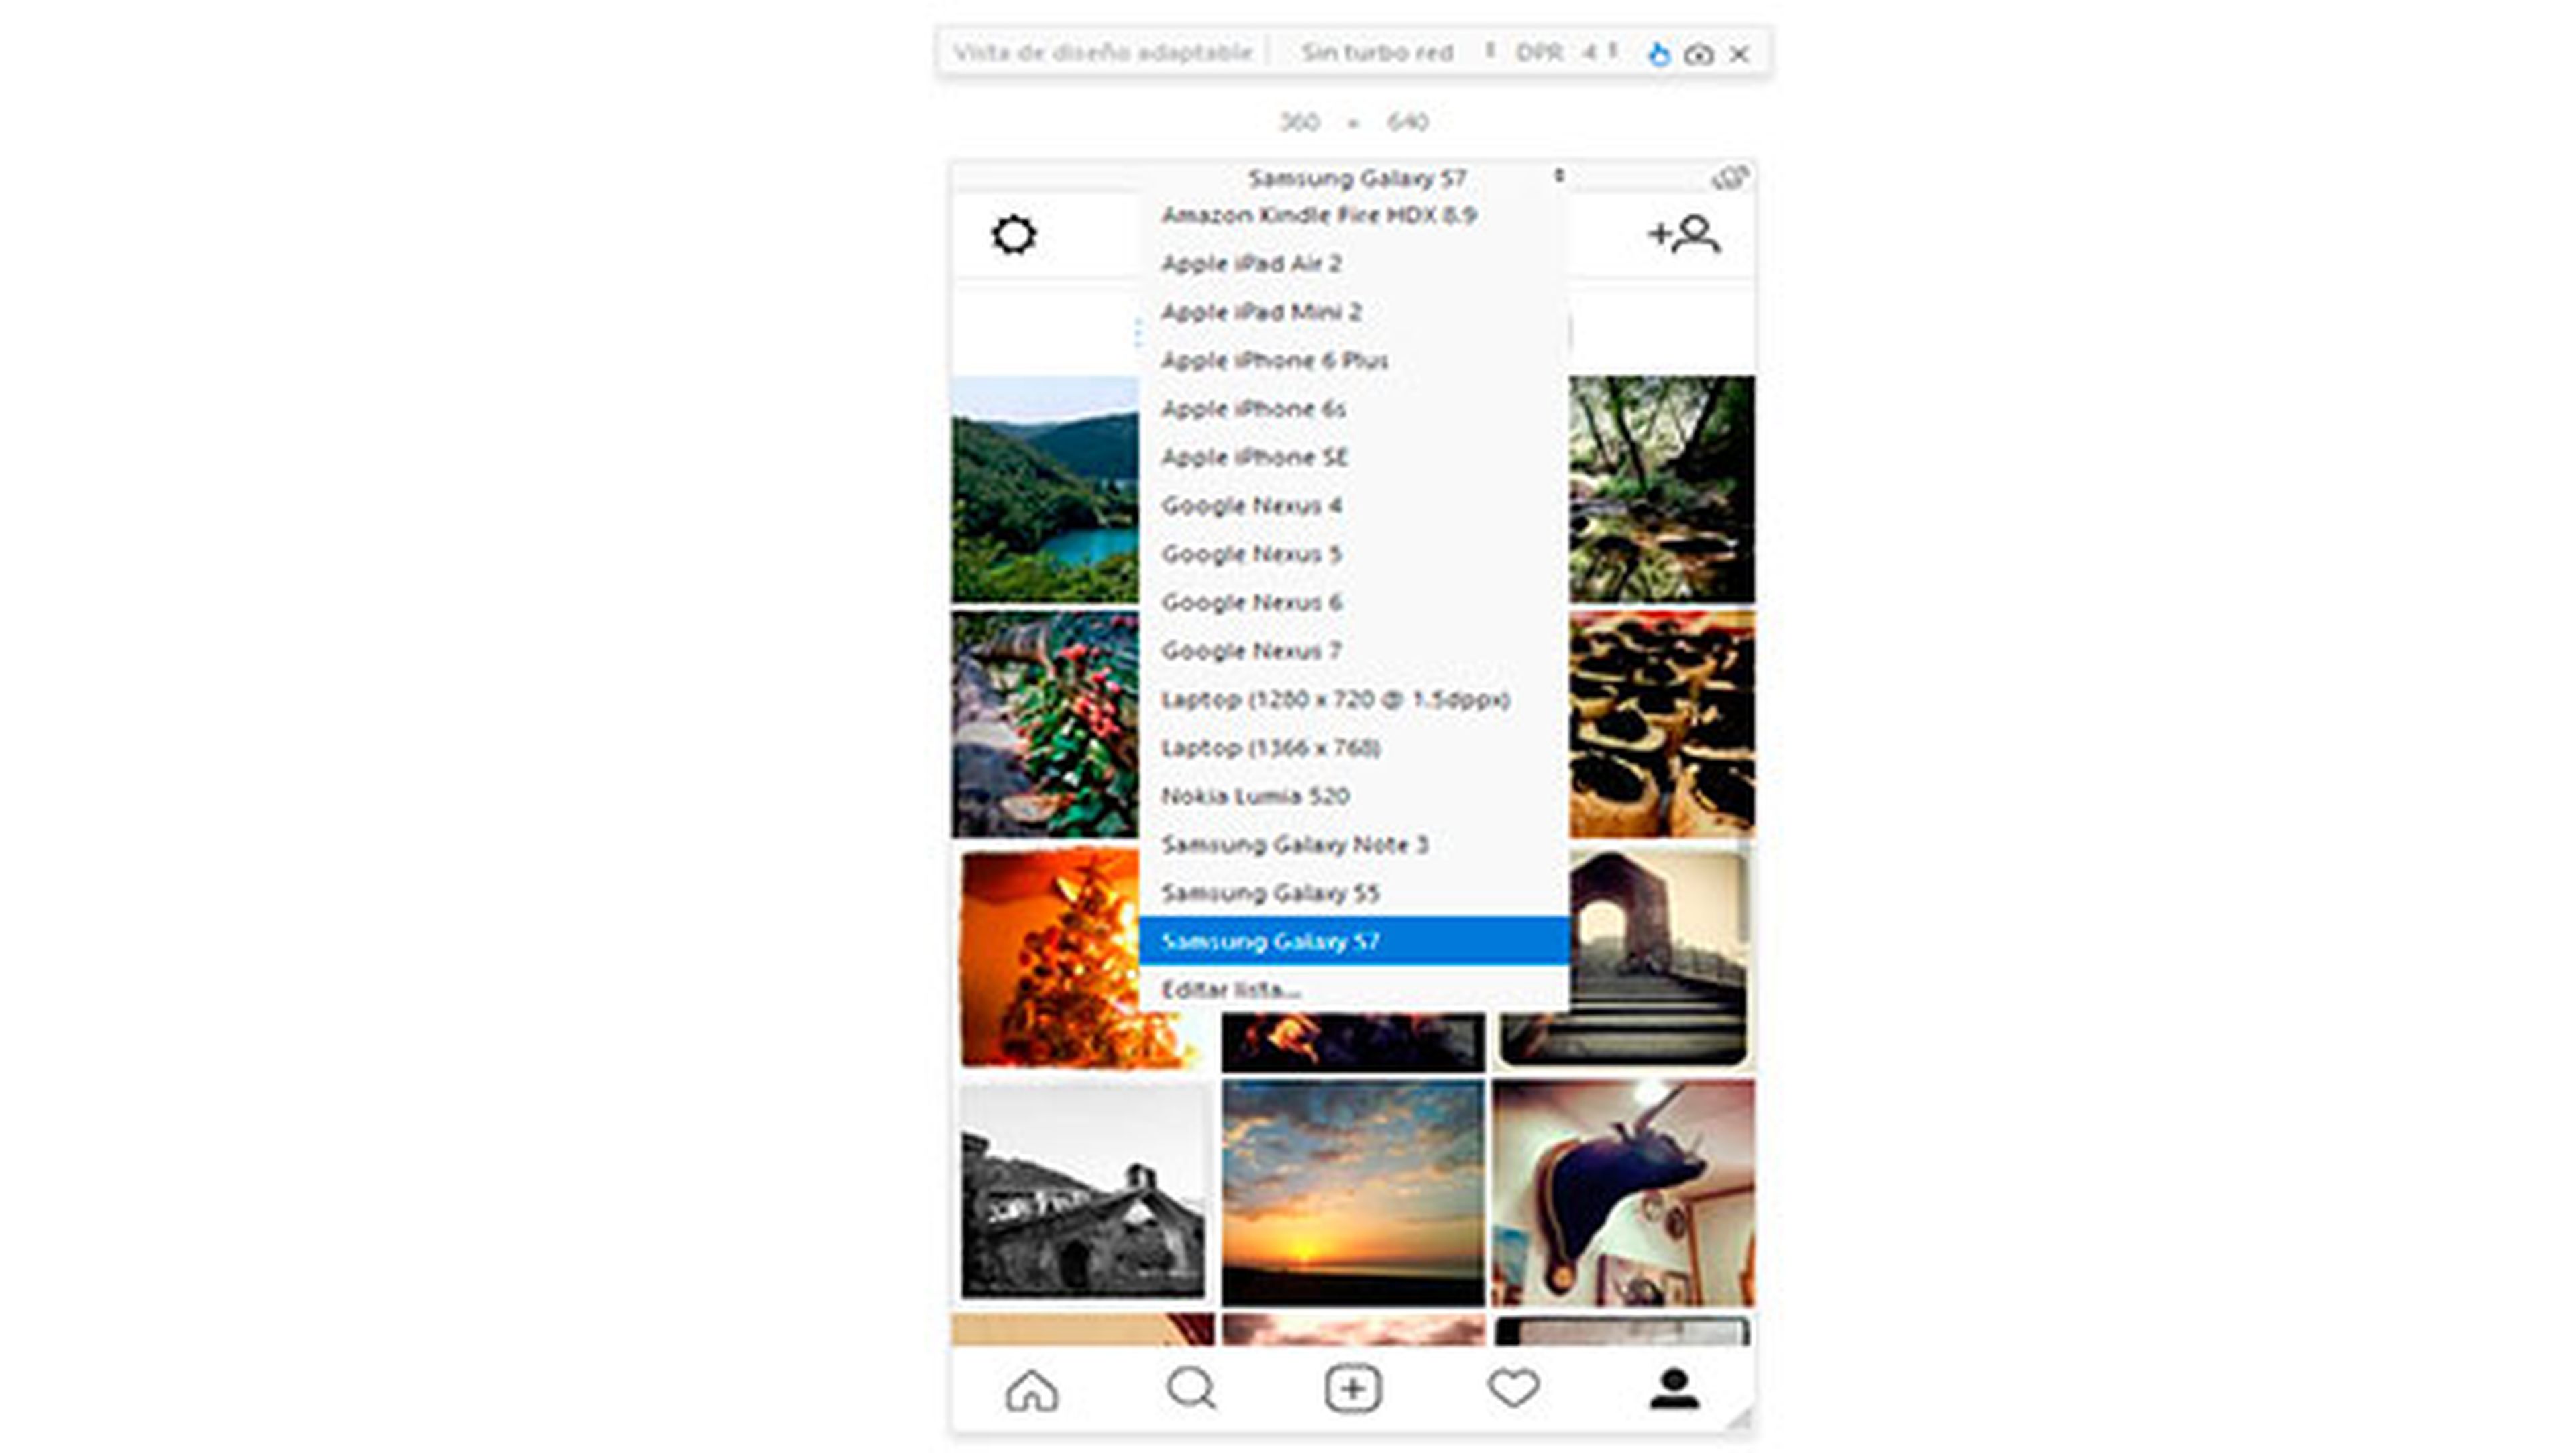 Cómo subir fotos a Instagram desde el ordenador